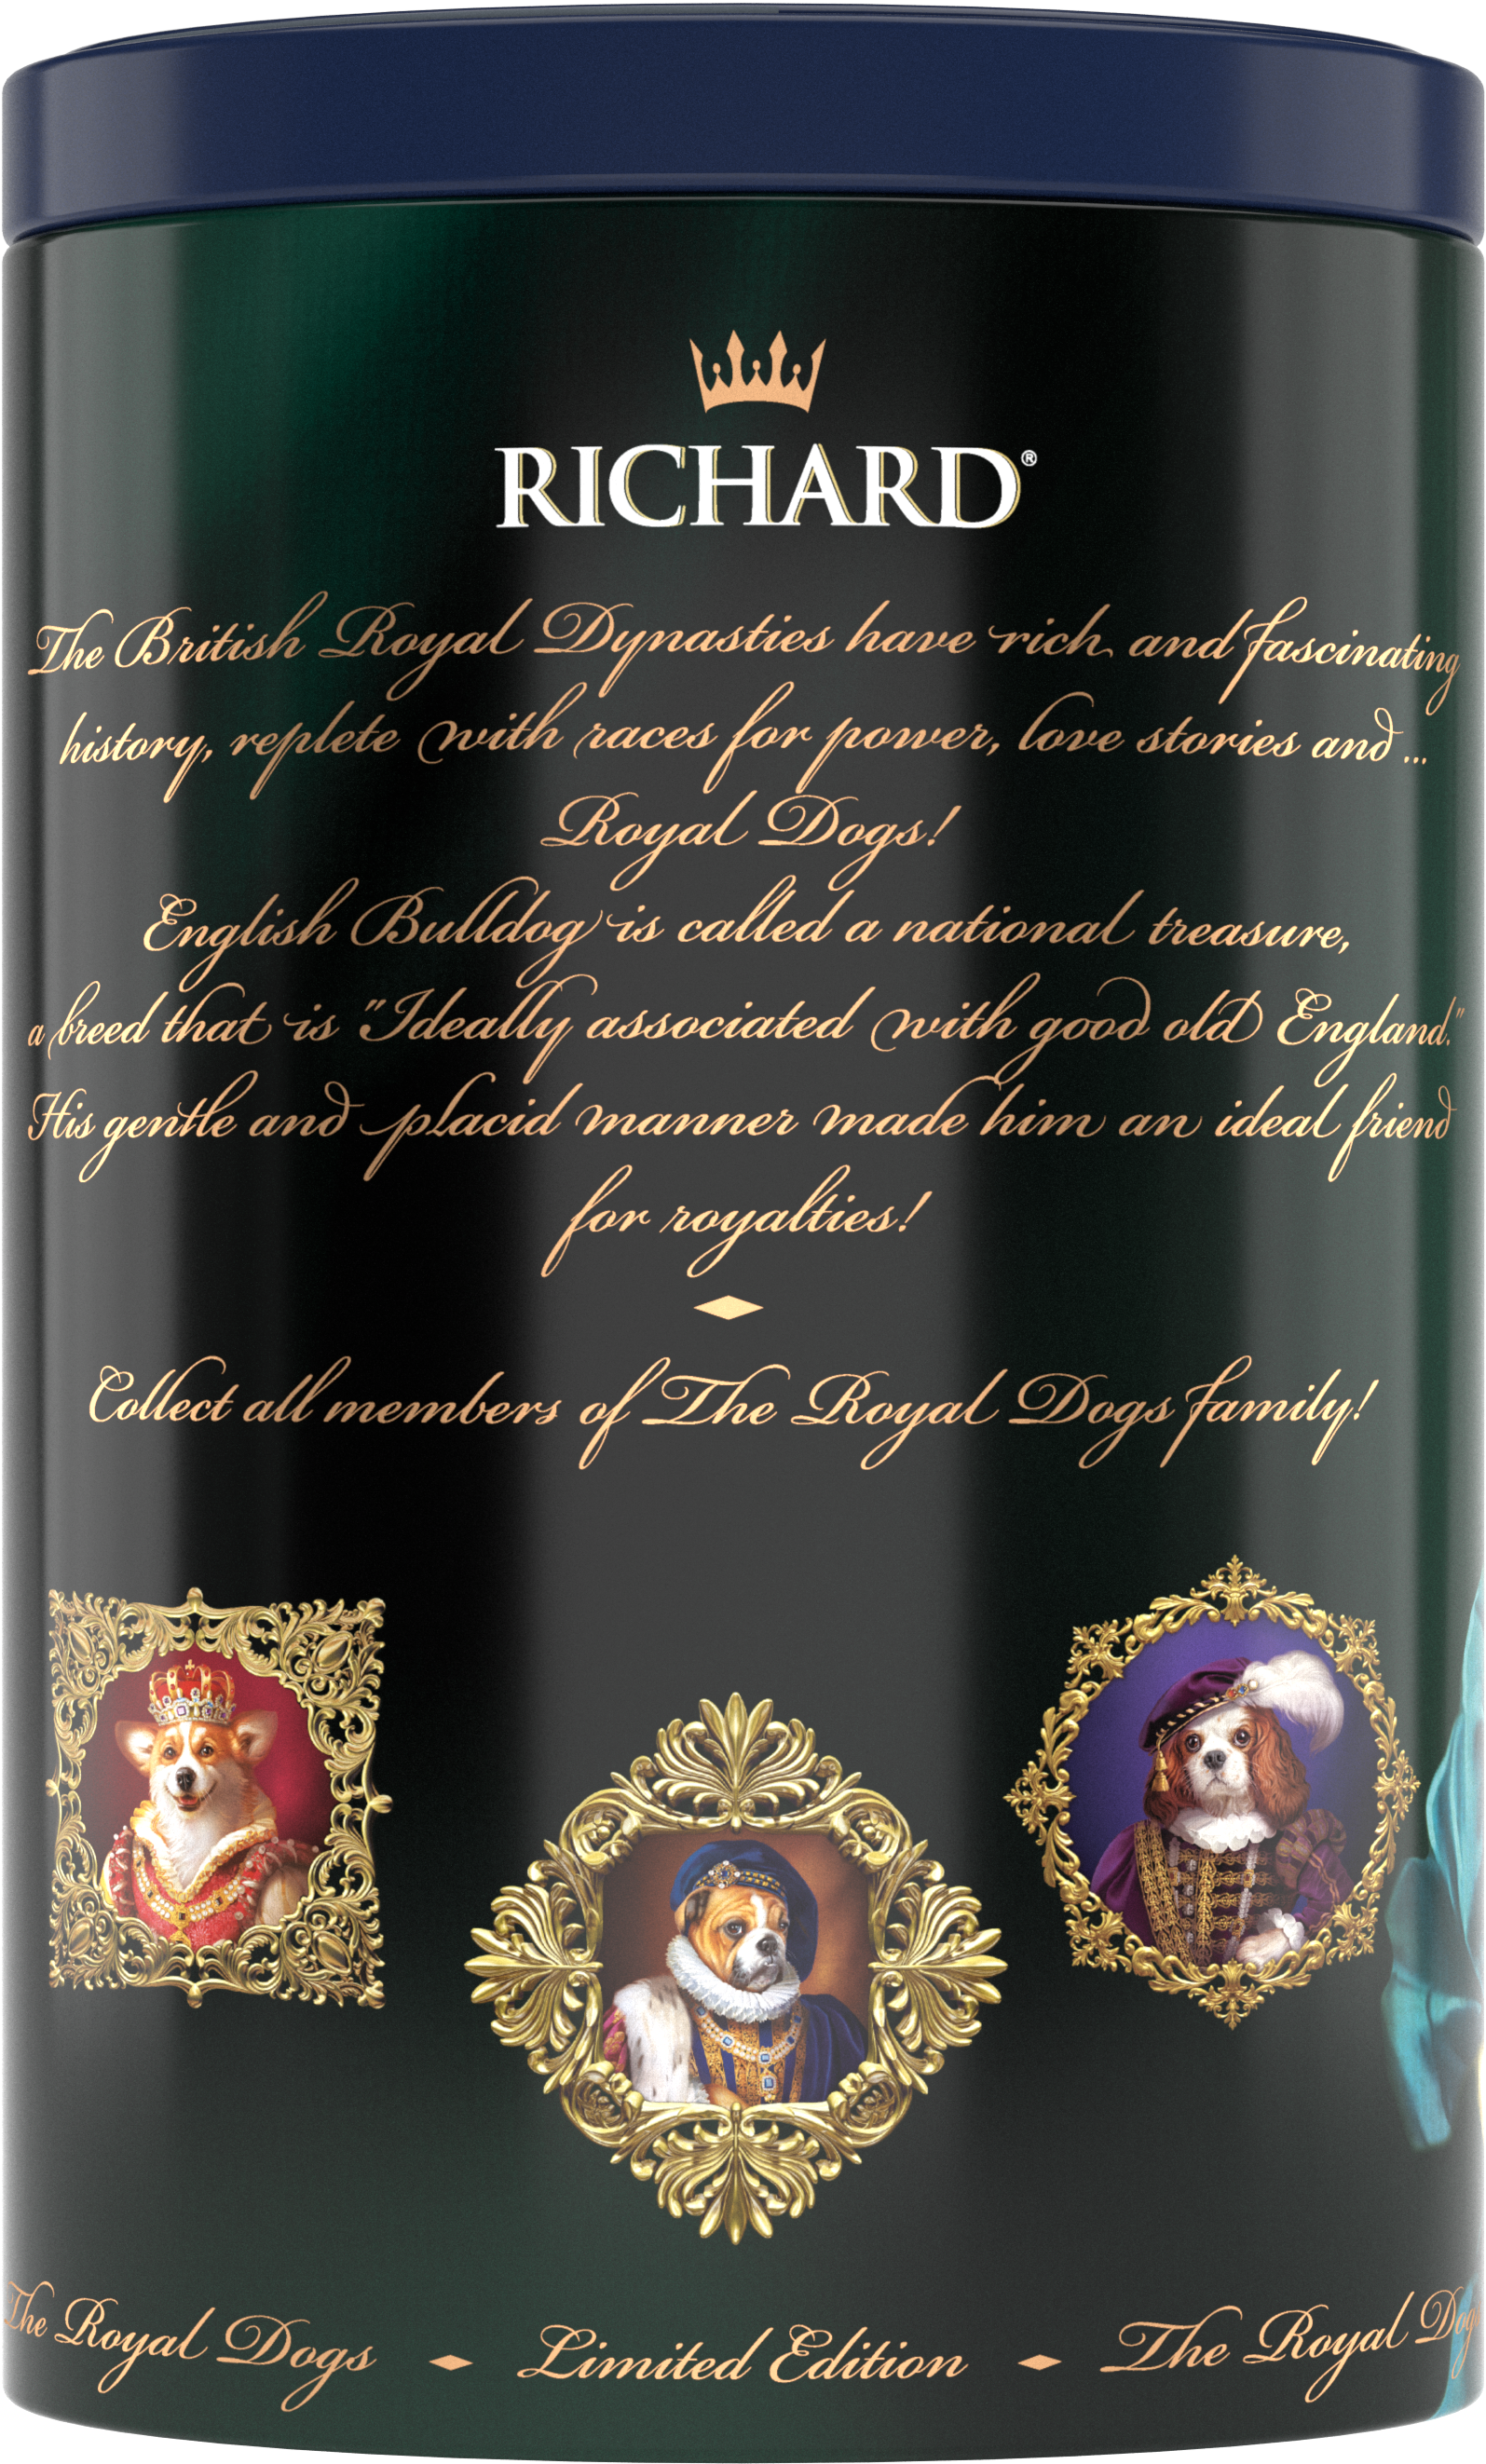 Richard Royal Kutyák, fekete tea, 34g, 20 piramis-filter, fémdoboz, Yorkie - RichardTeavn - vásároljon a 2990.00 Ft